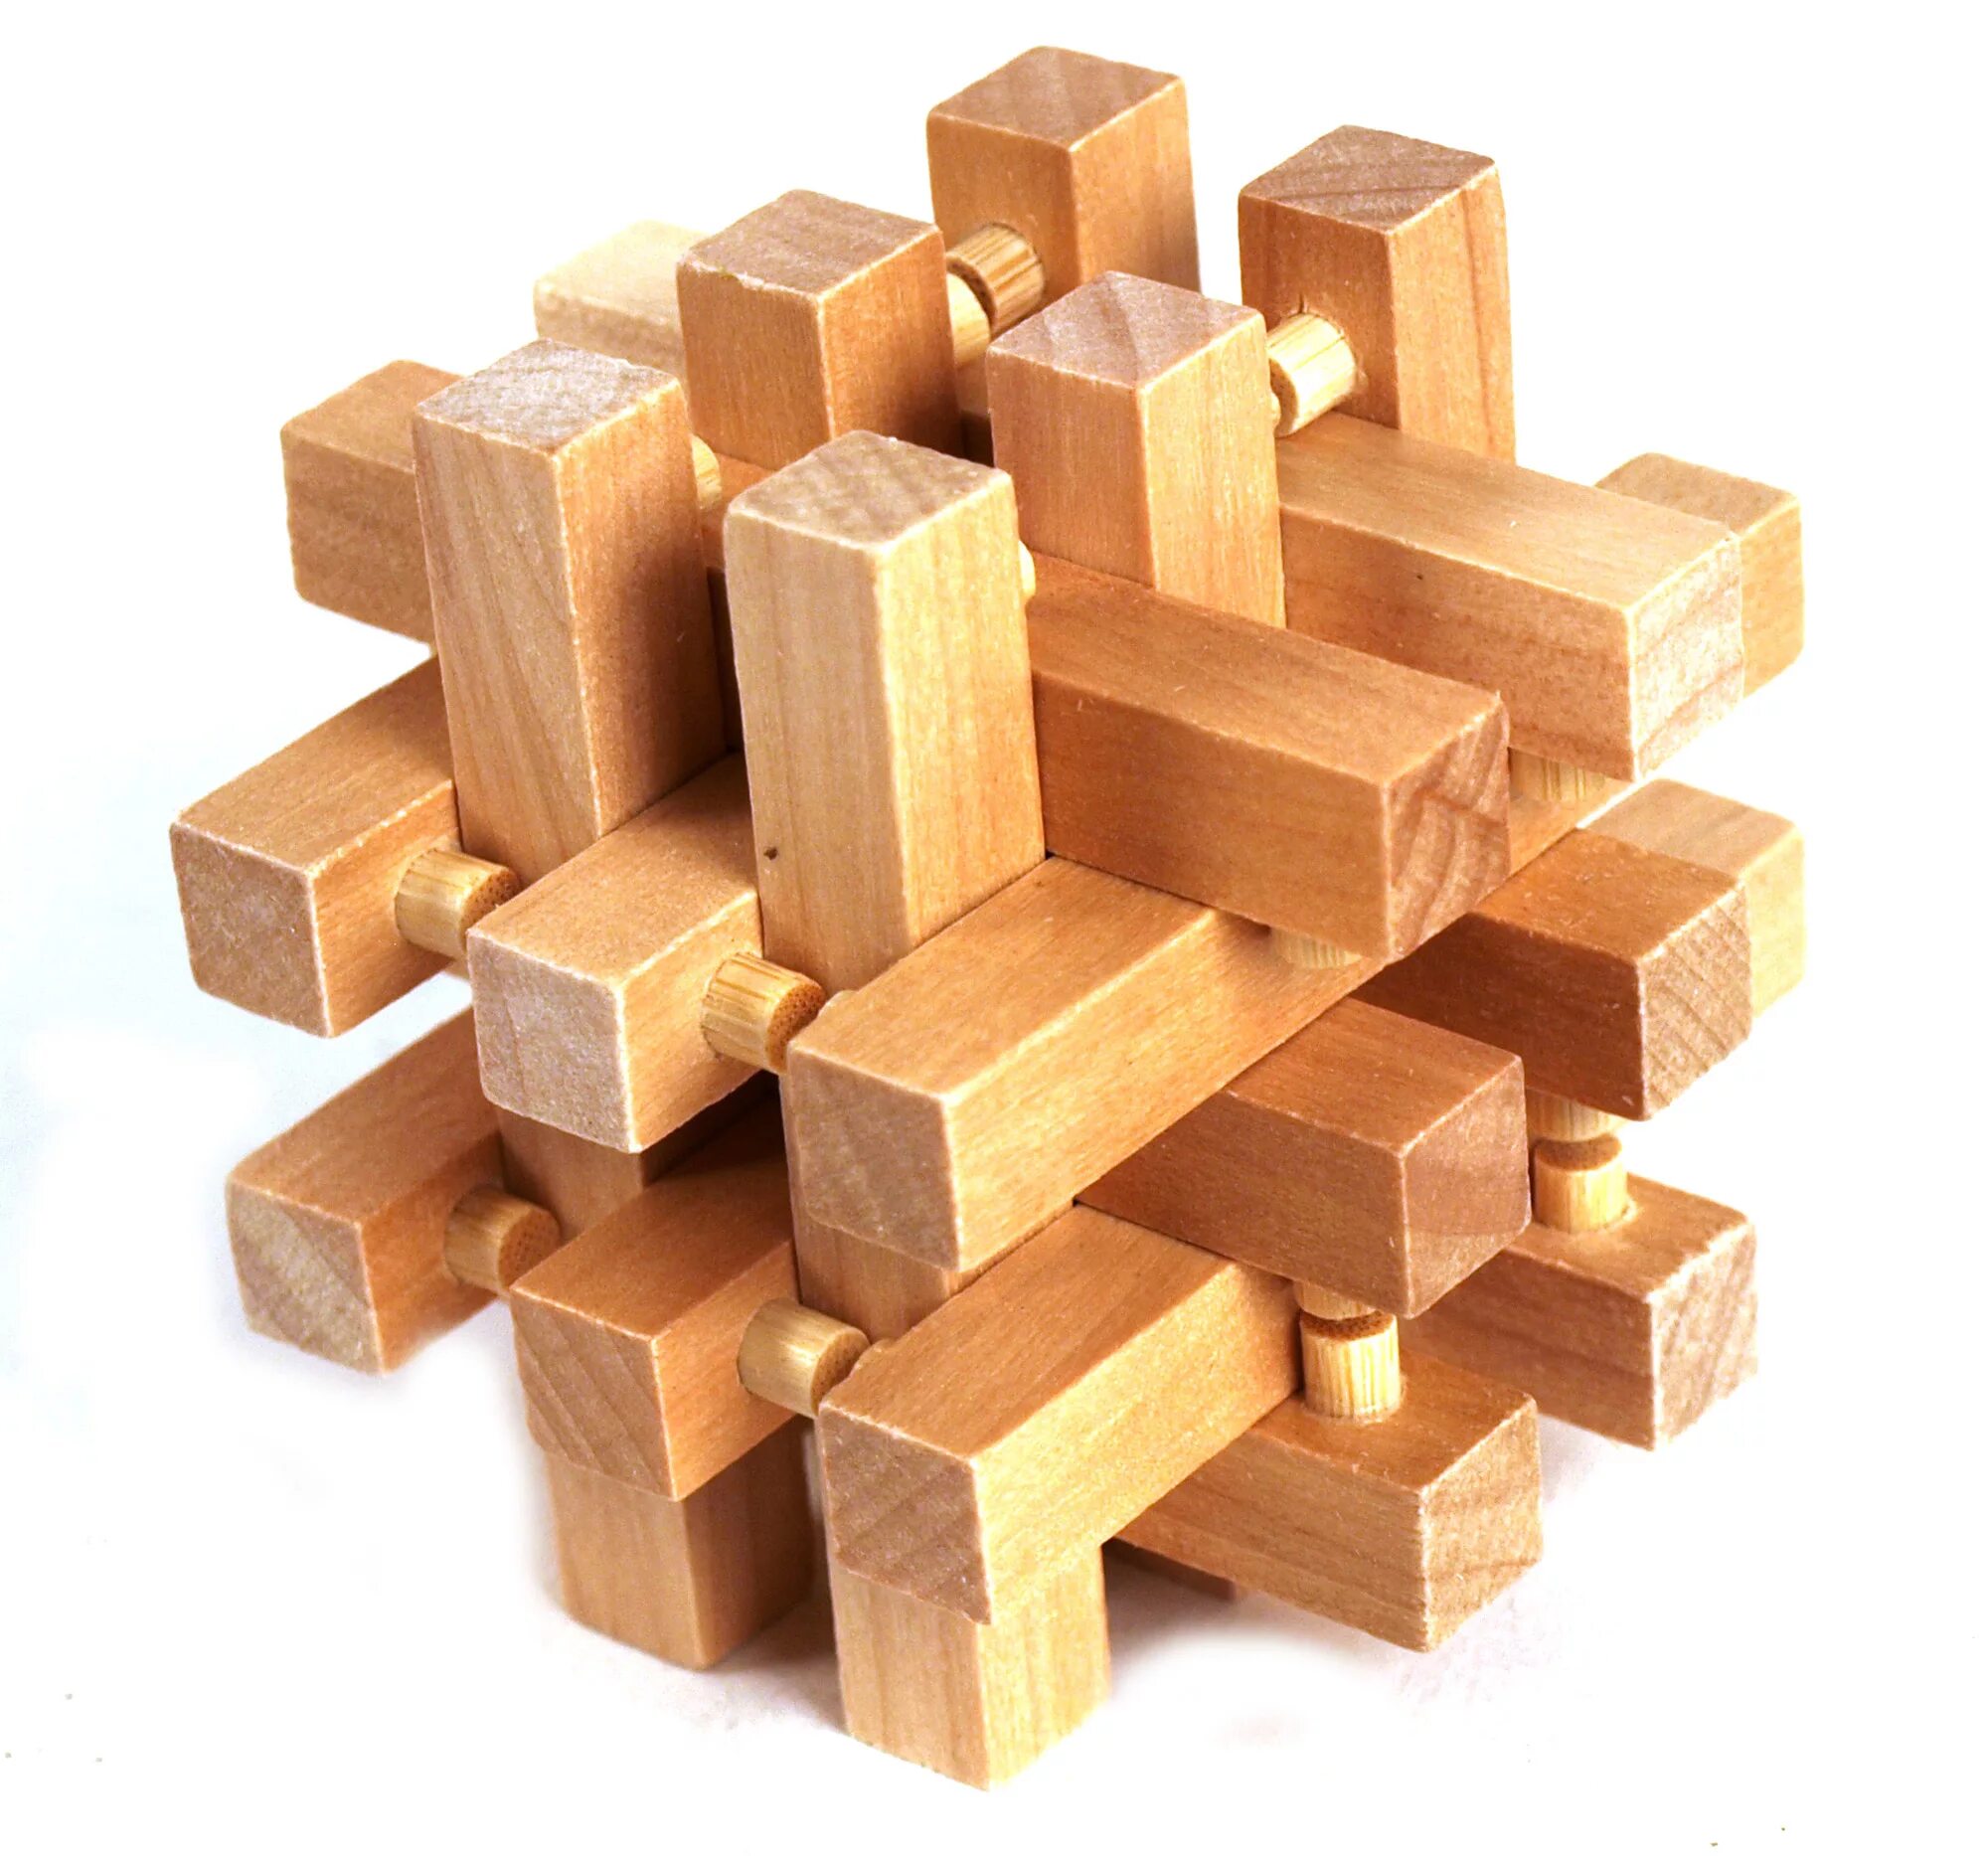 Деревянная головоломка куб Дюбуа. Kairstos-Cube деревянная головоломка. Головоломка куб, Пелси и632. Кубик 3d Puzzle Cube. Игра головоломка собрать